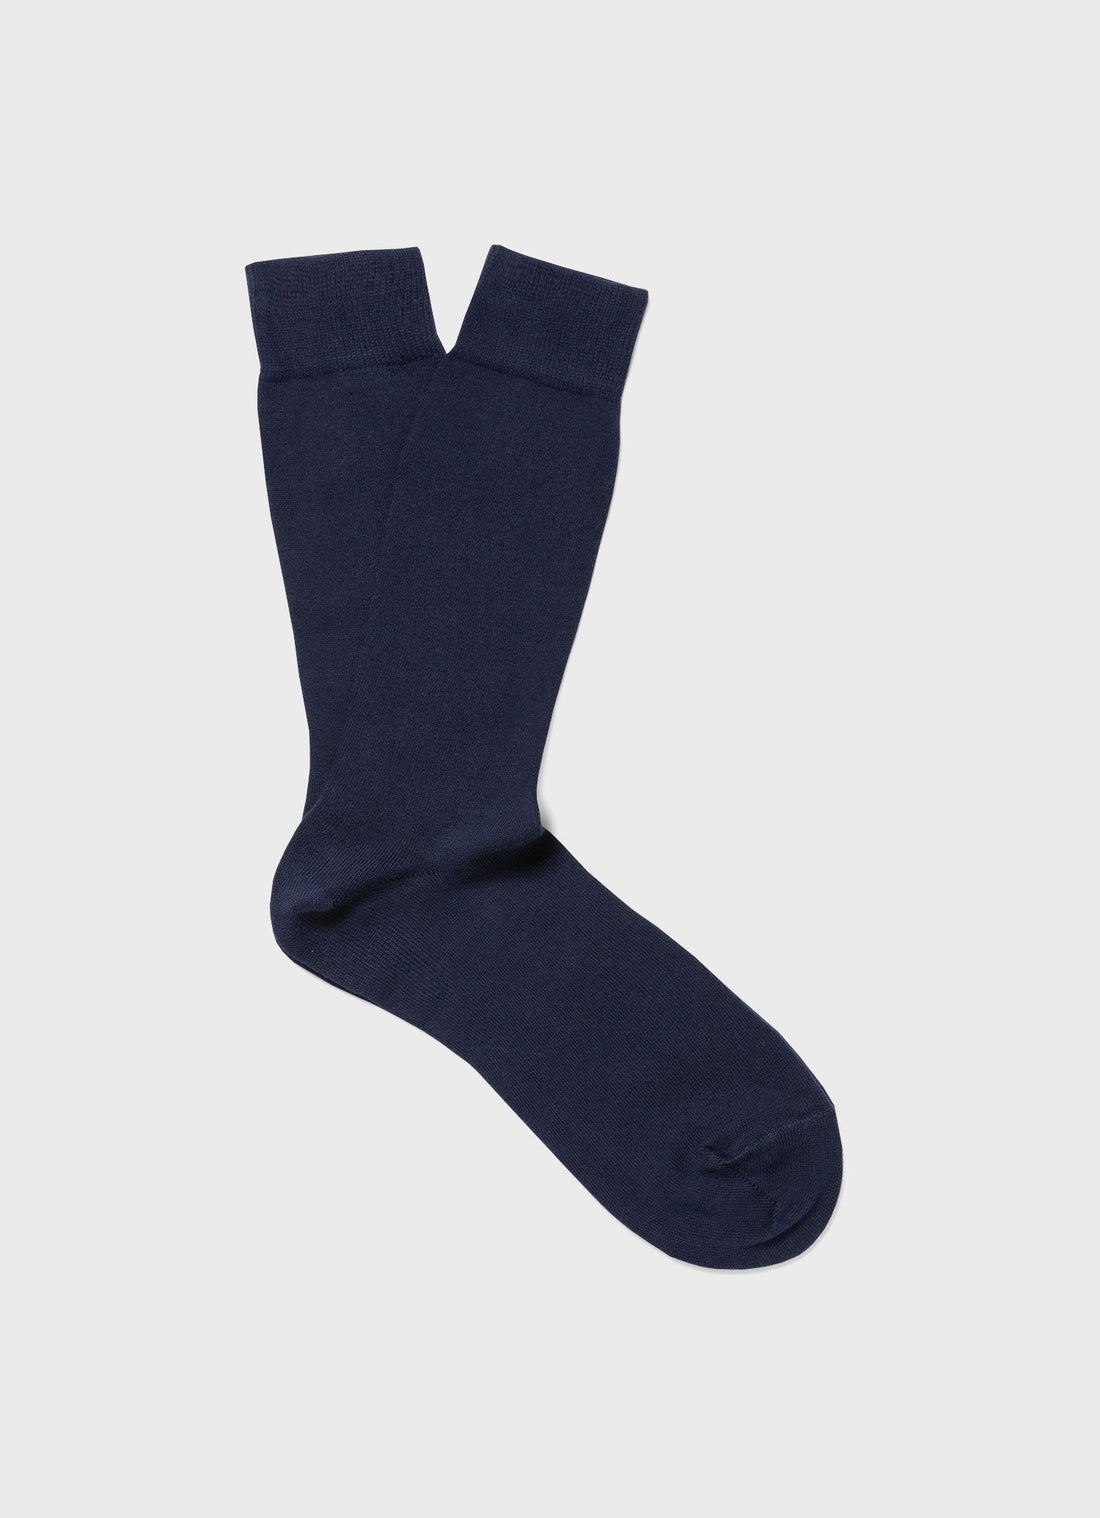 Men's Long Staple Cotton Socks in Navy